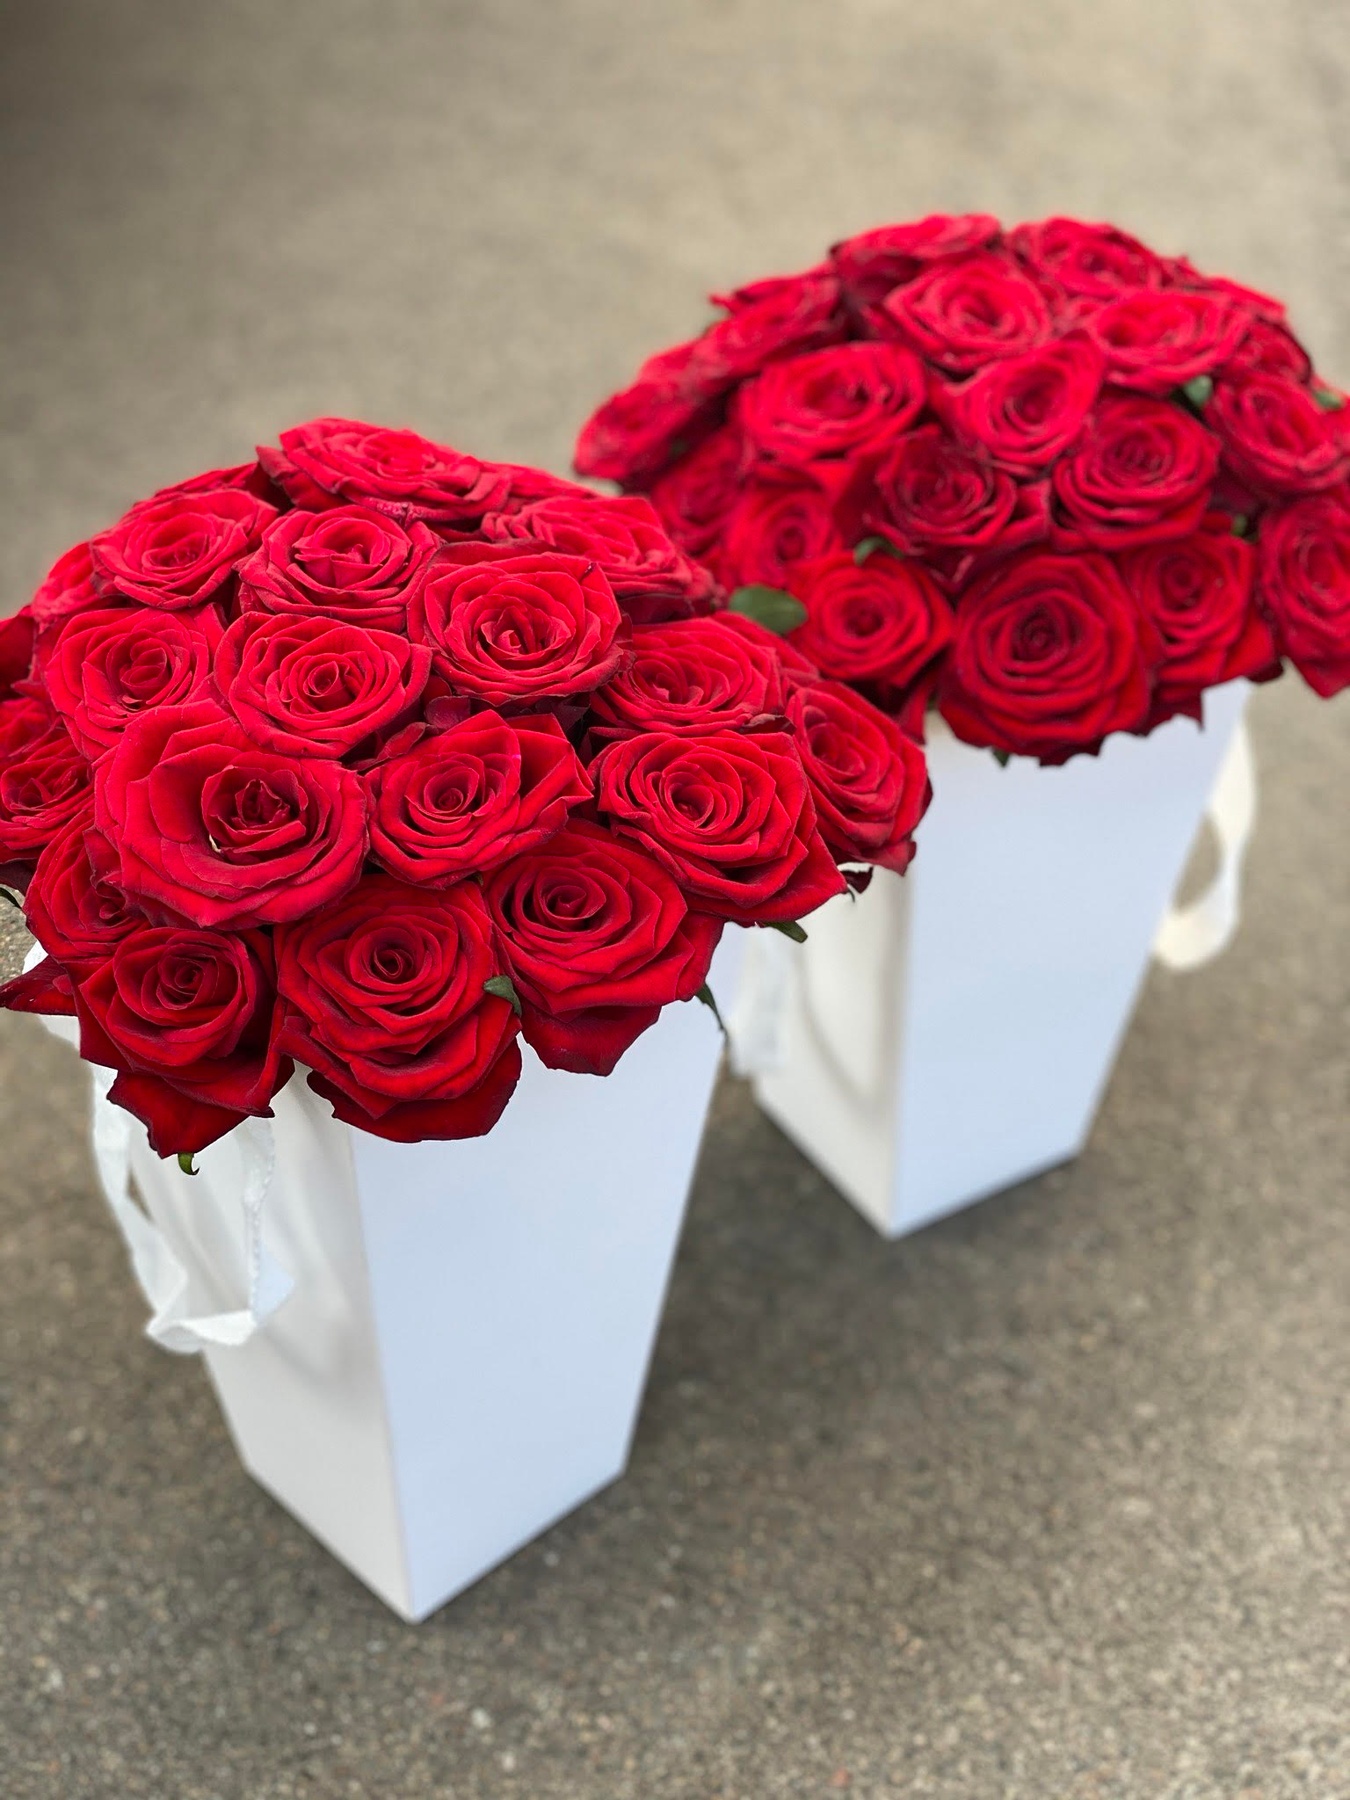 Трапецієвидна коробка з червоними трояндами